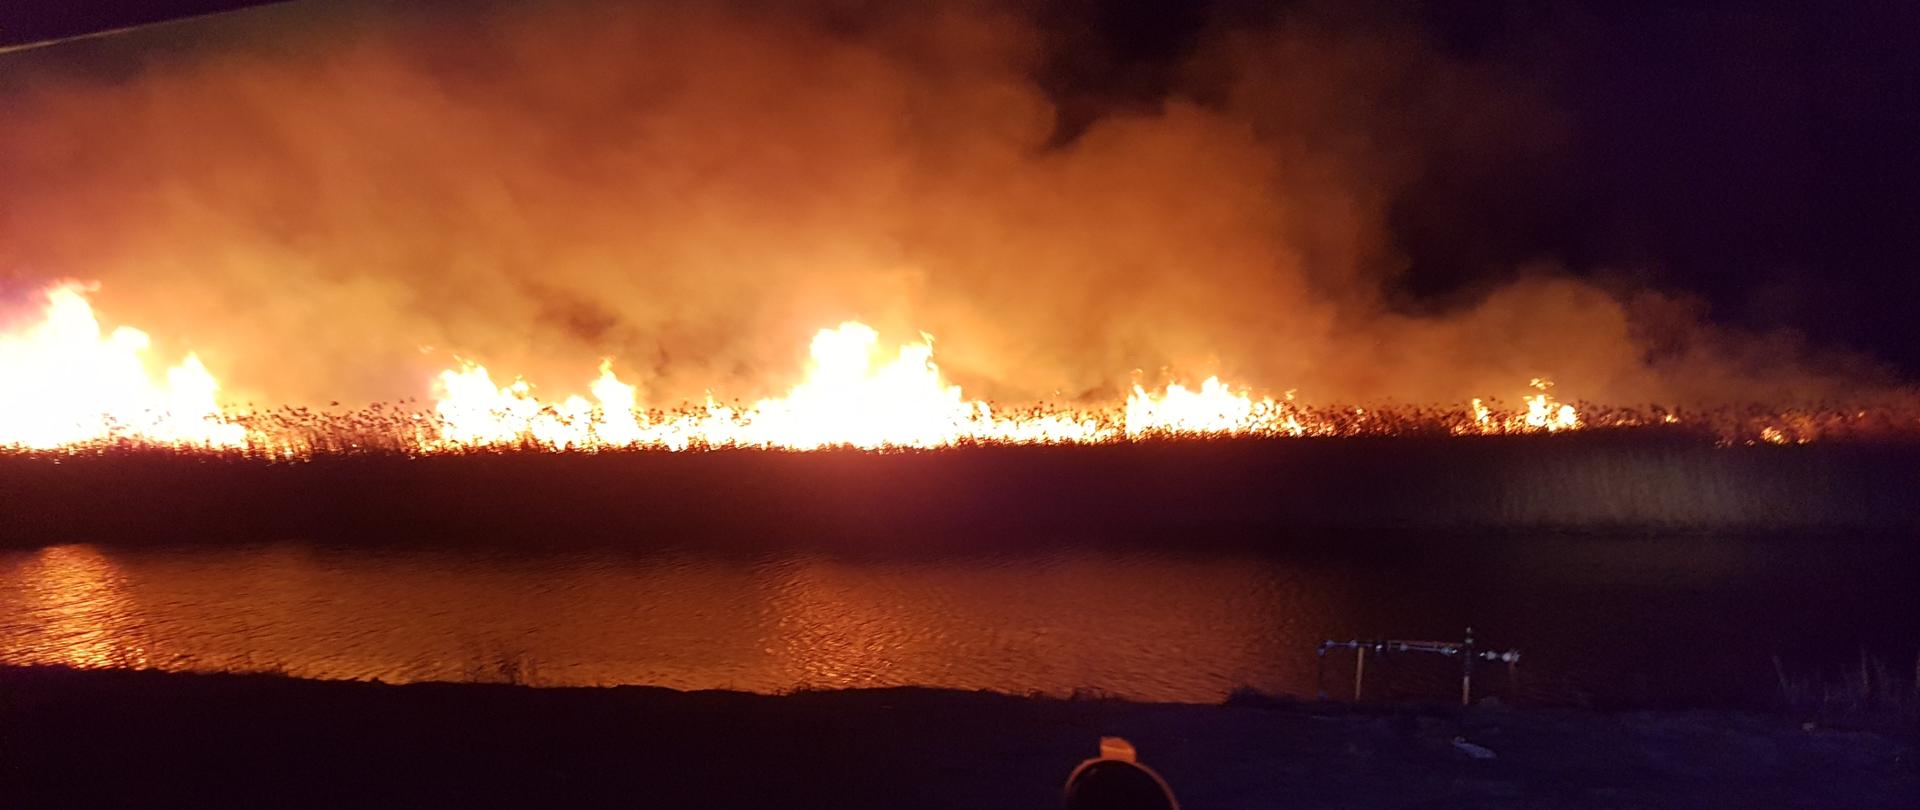 Zdjęcie zostało wykonane w późnych godzinach nocnych. Fotografia przedstawia duży pożar palących się traw i trzcin przy zbiorniku wodnym. Obraz prezentuje płomienie nieużytków, które sięgają miejscami 3-4 metrów.